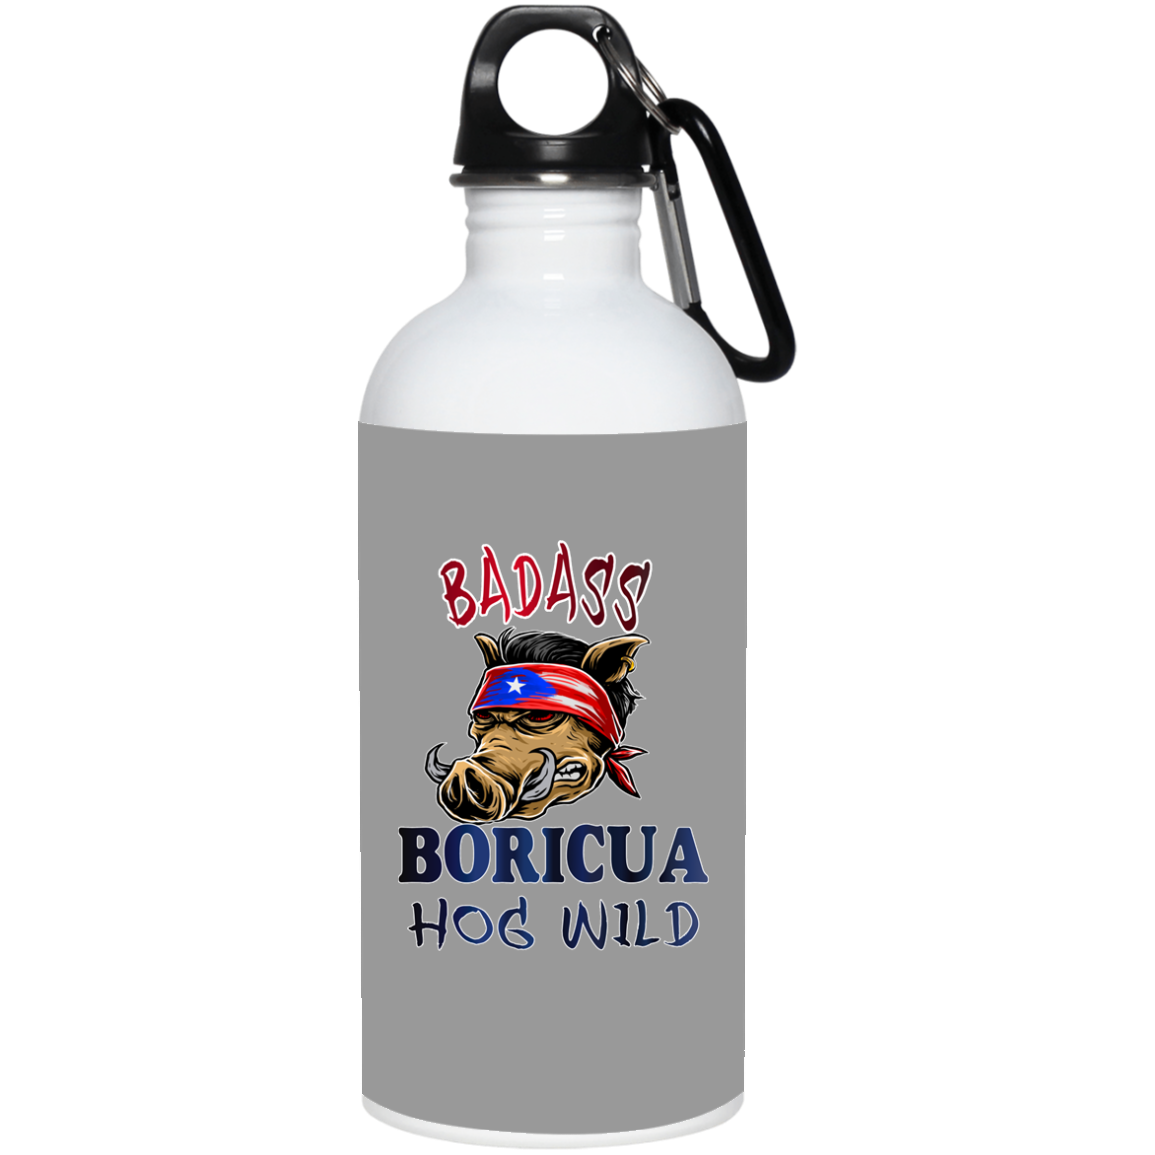 Badass Boricua Hog Wild 20 oz. Stainless Steel Water Bottle